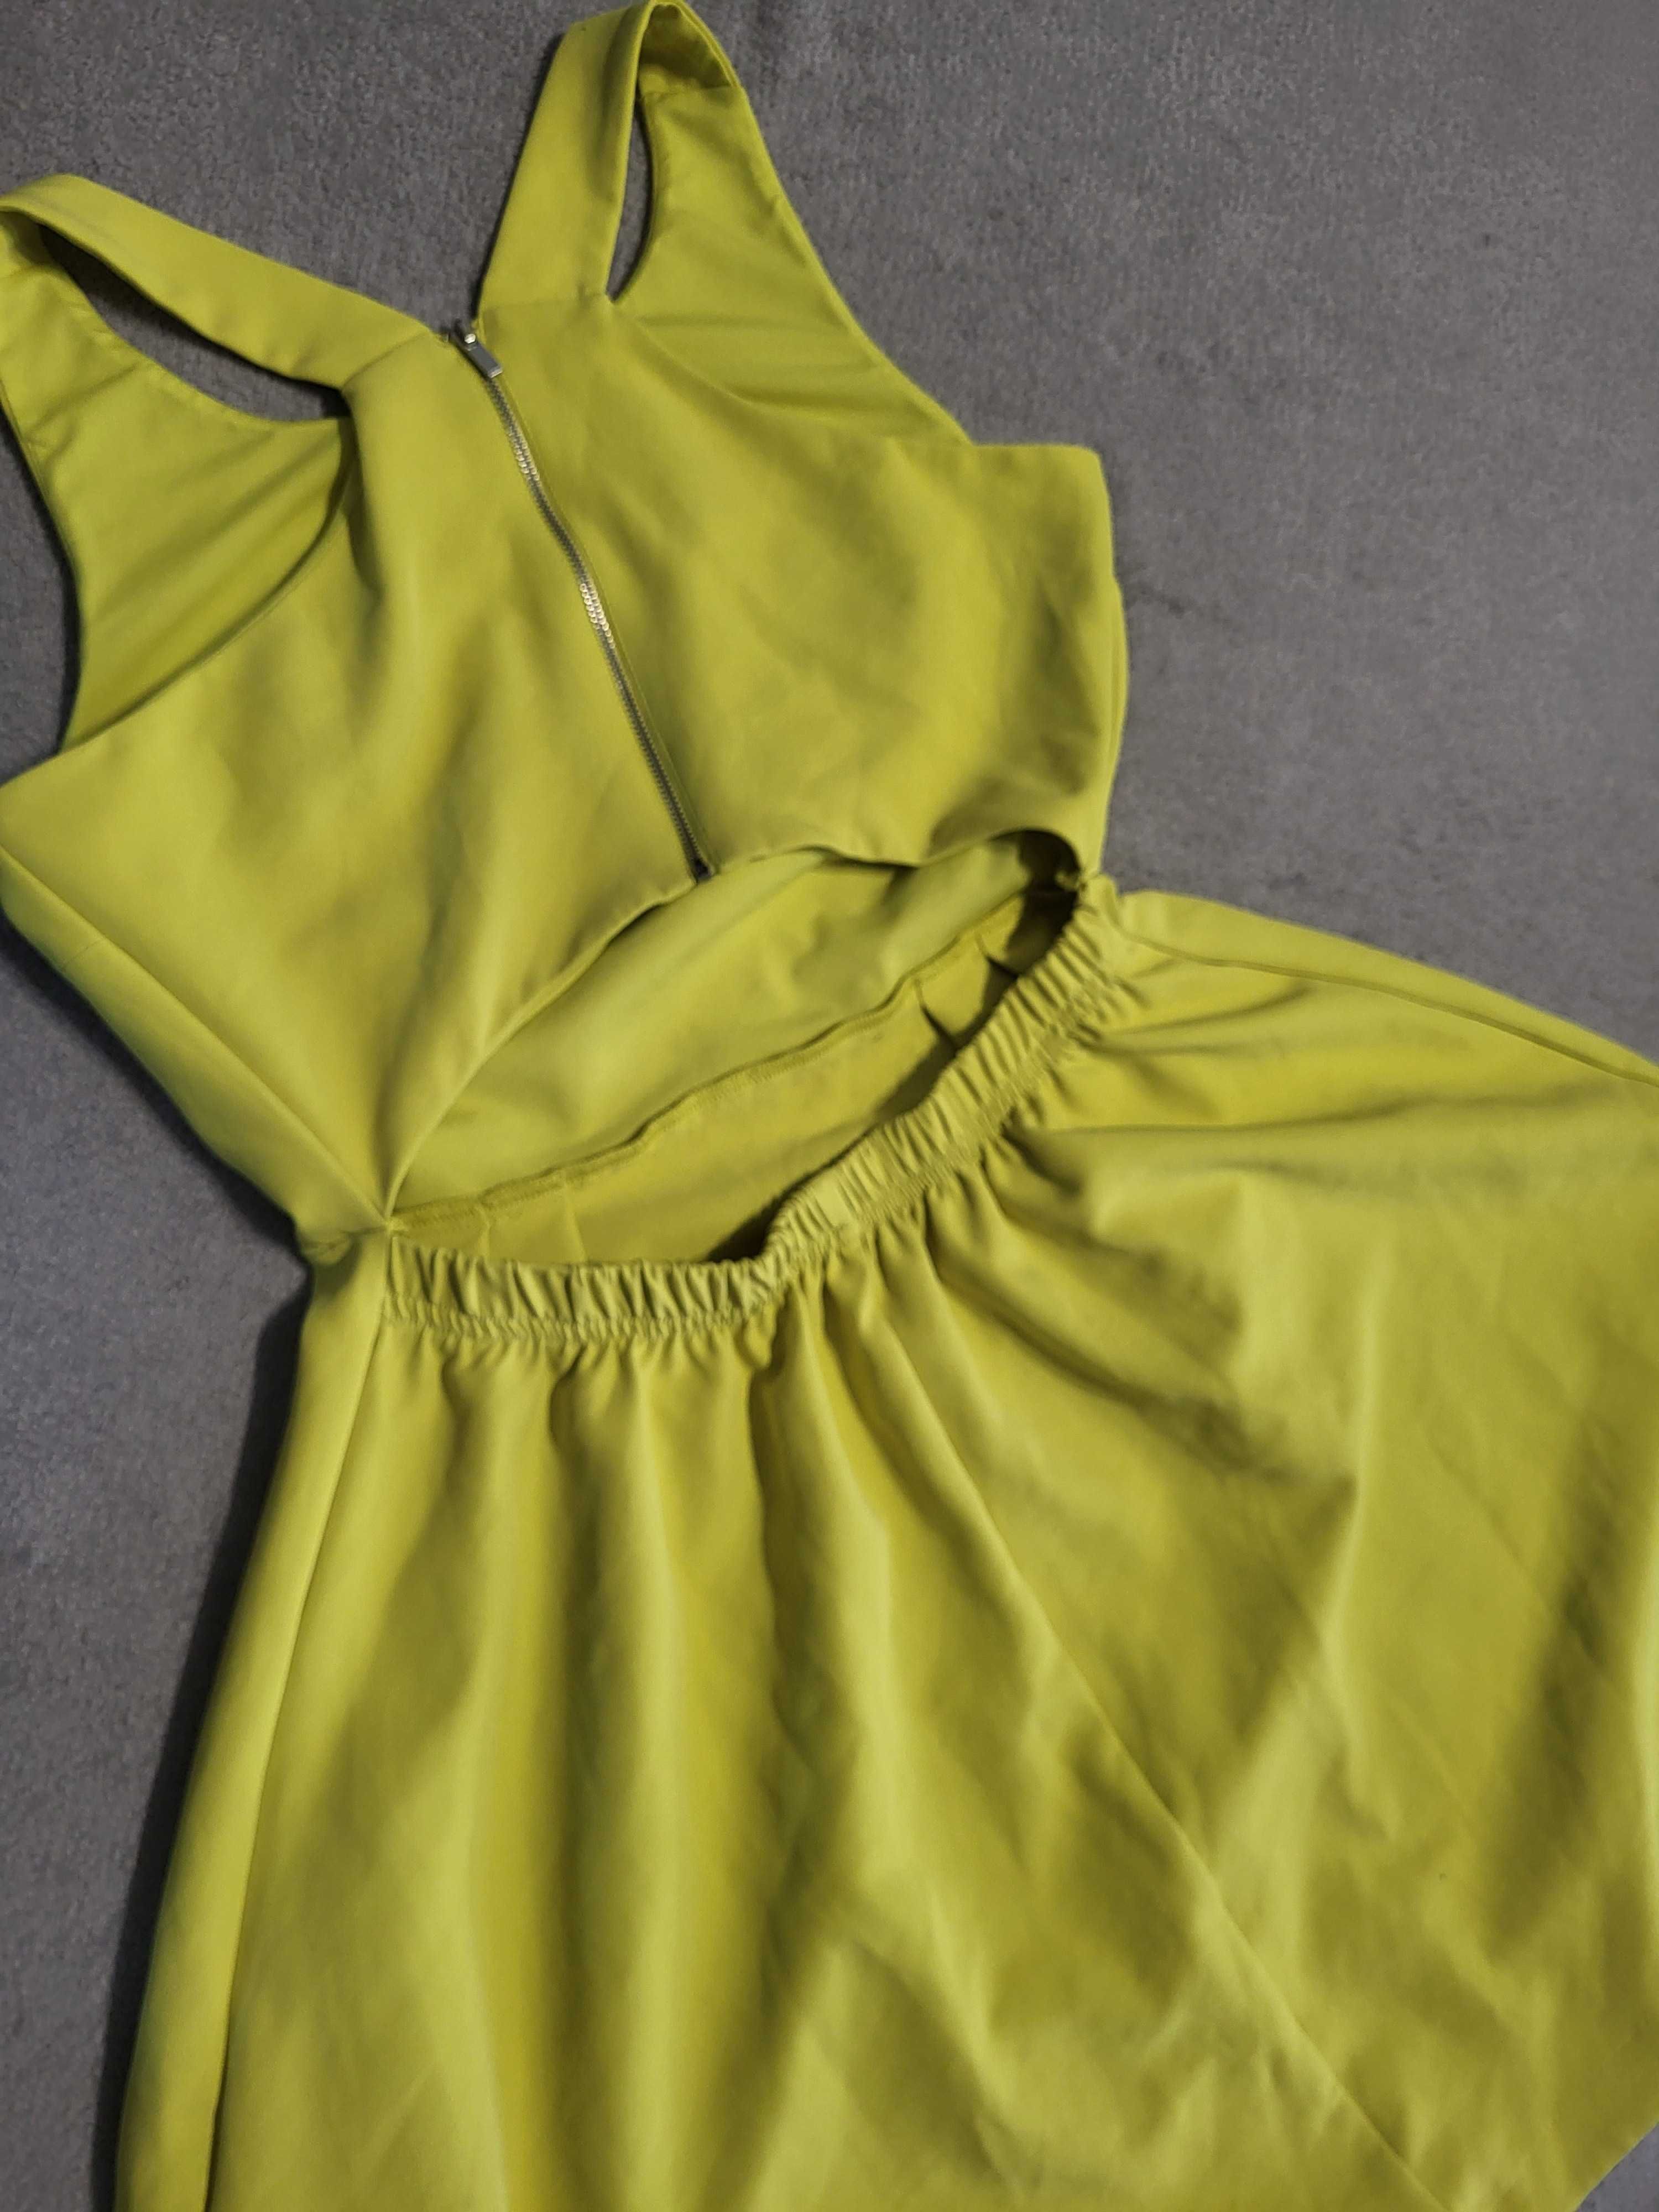 Sukienka Reserved limonkowa sukienka na komunię wesele, rozmiar M 38